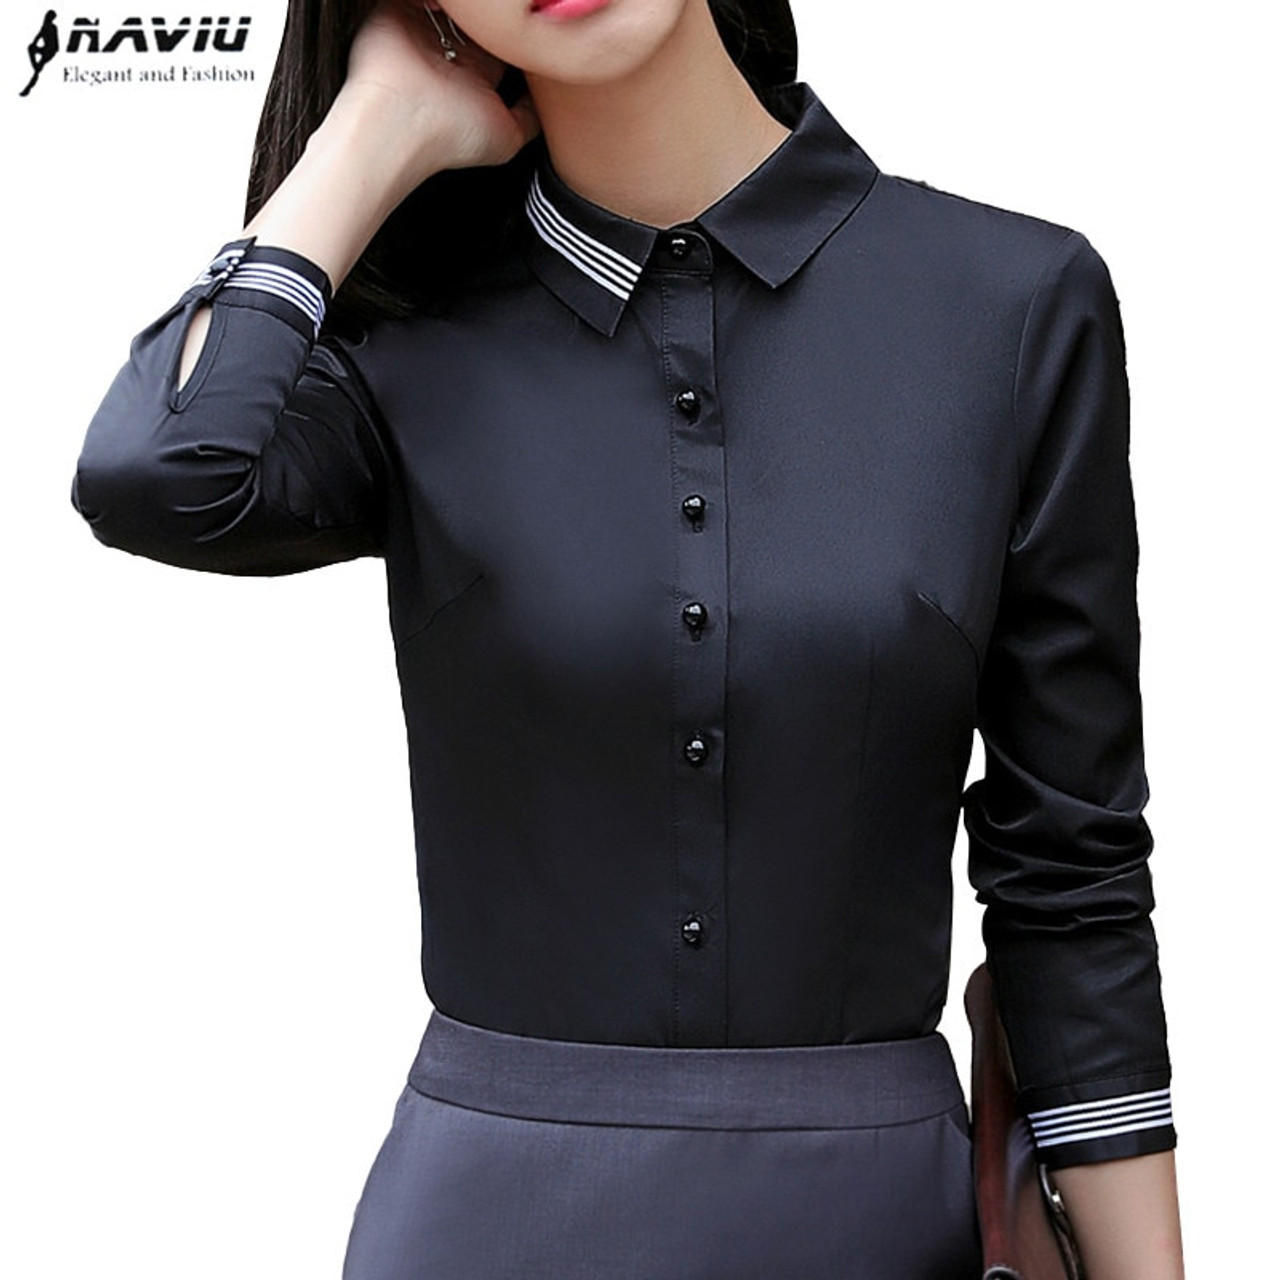 black formal shirt womens